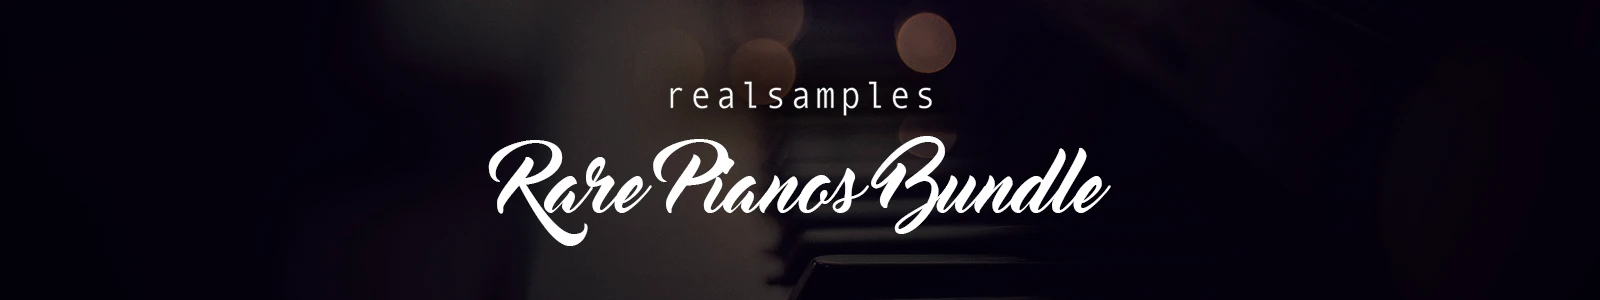 RARE PIANOS bundle